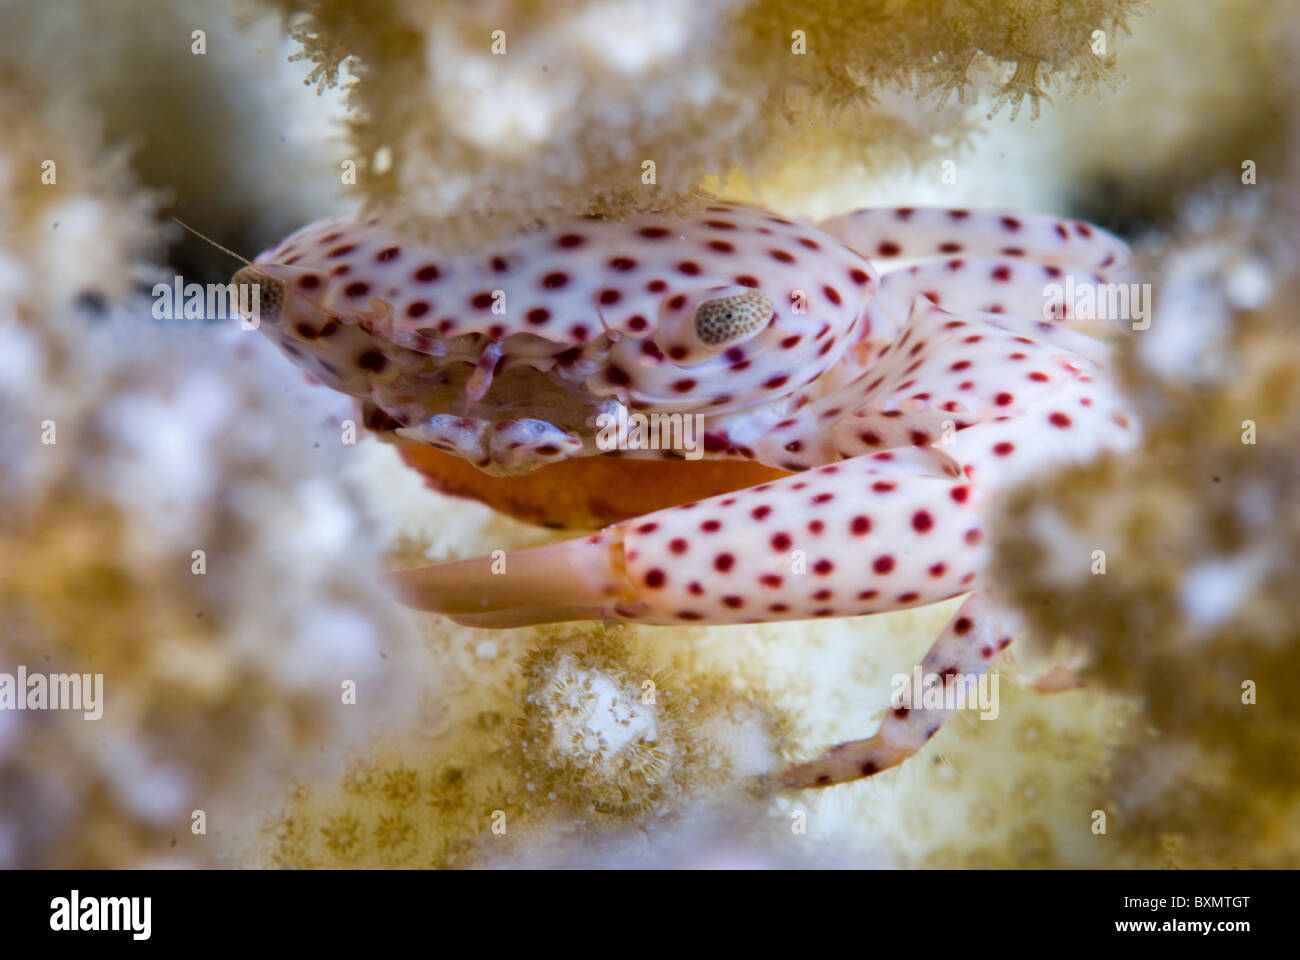 Il granchio in corallo duro, Nuweiba, Sinai, Egitto, Mar Rosso, Oceano Indiano Foto Stock